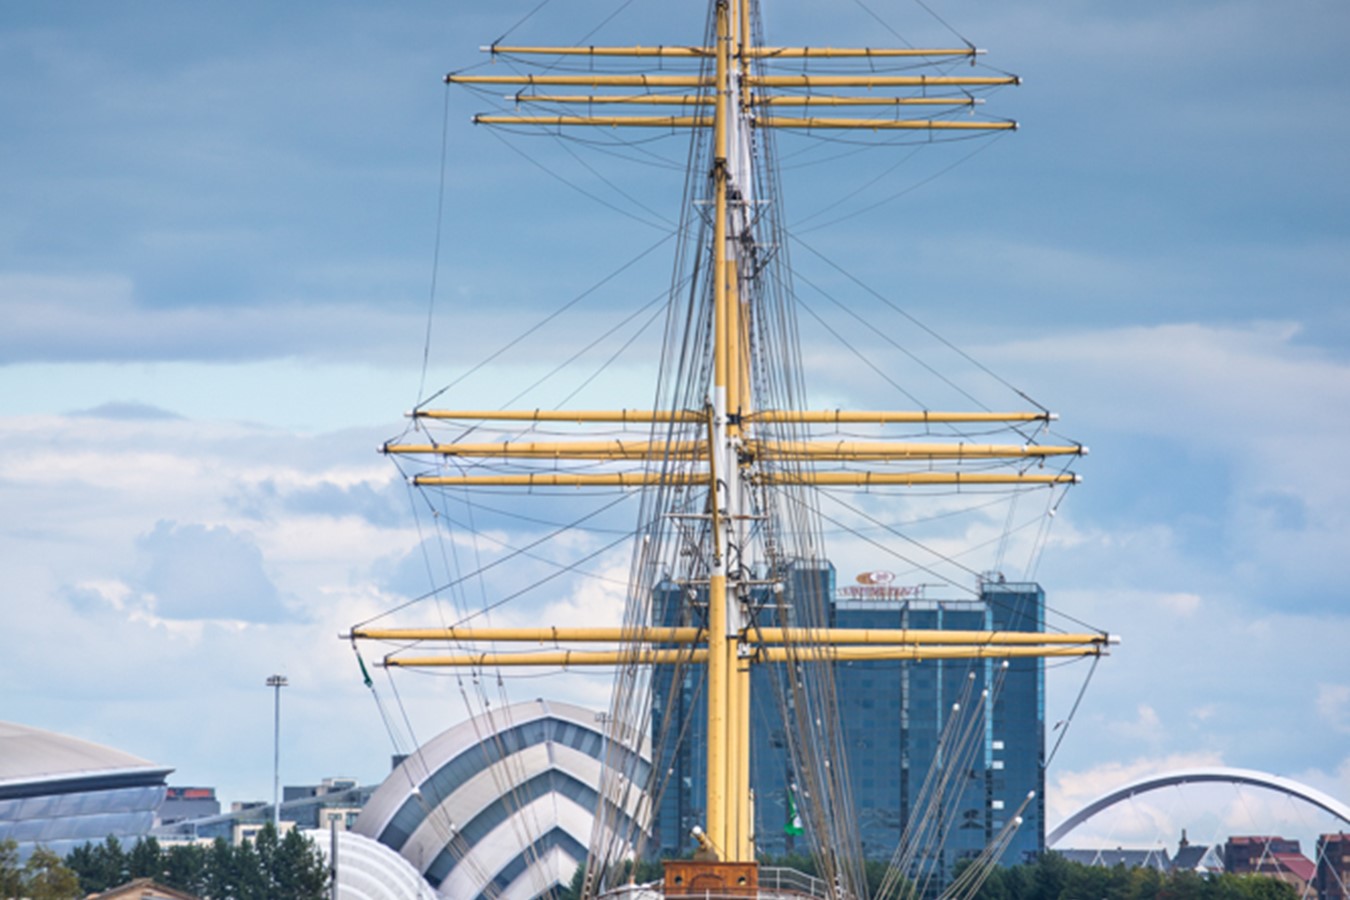 Tall Ship and armadillo